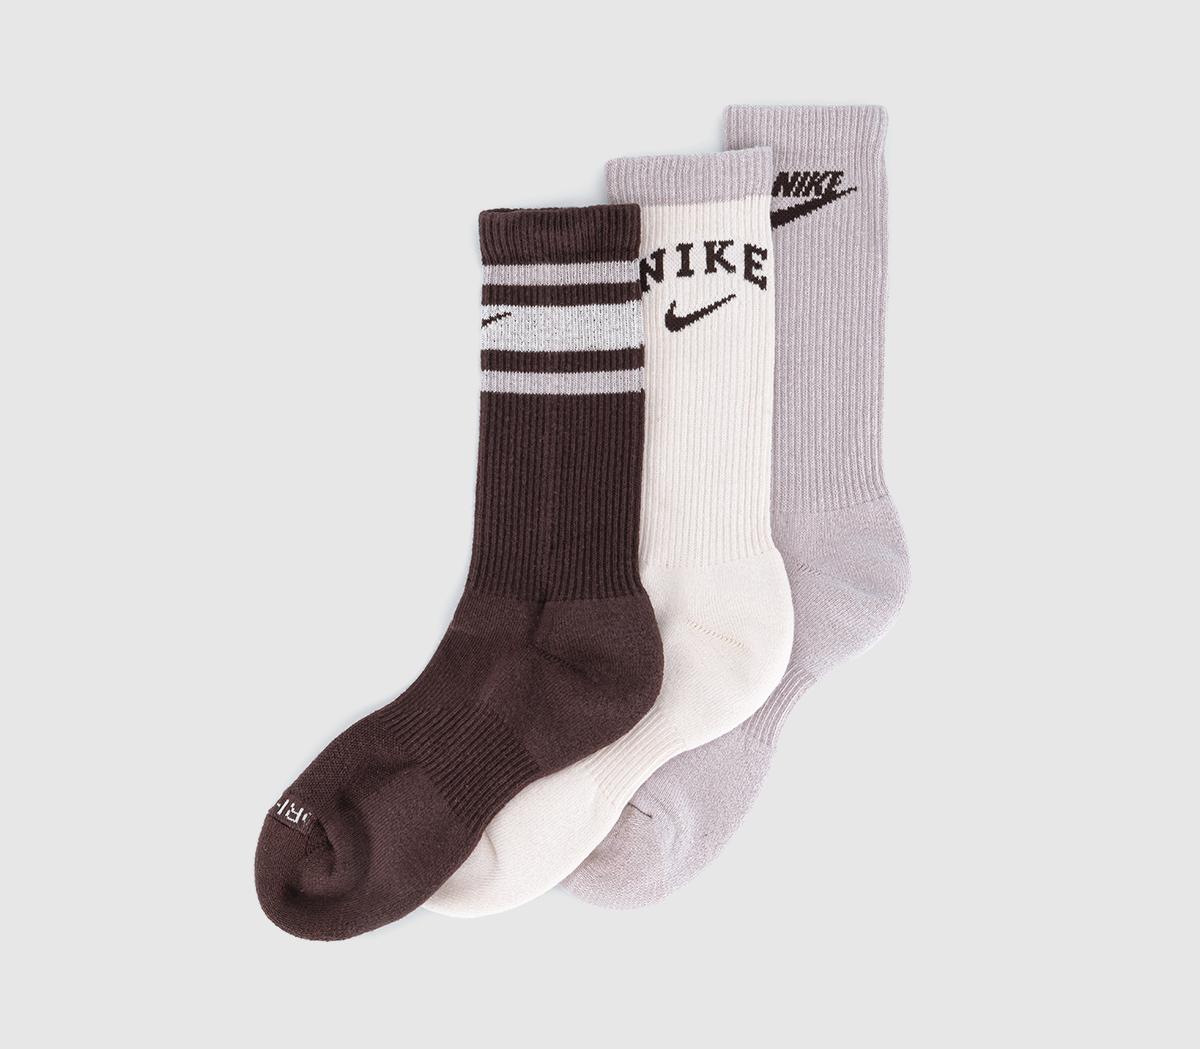 NikeCrew Socks 3 PairsPurple Brown Multi